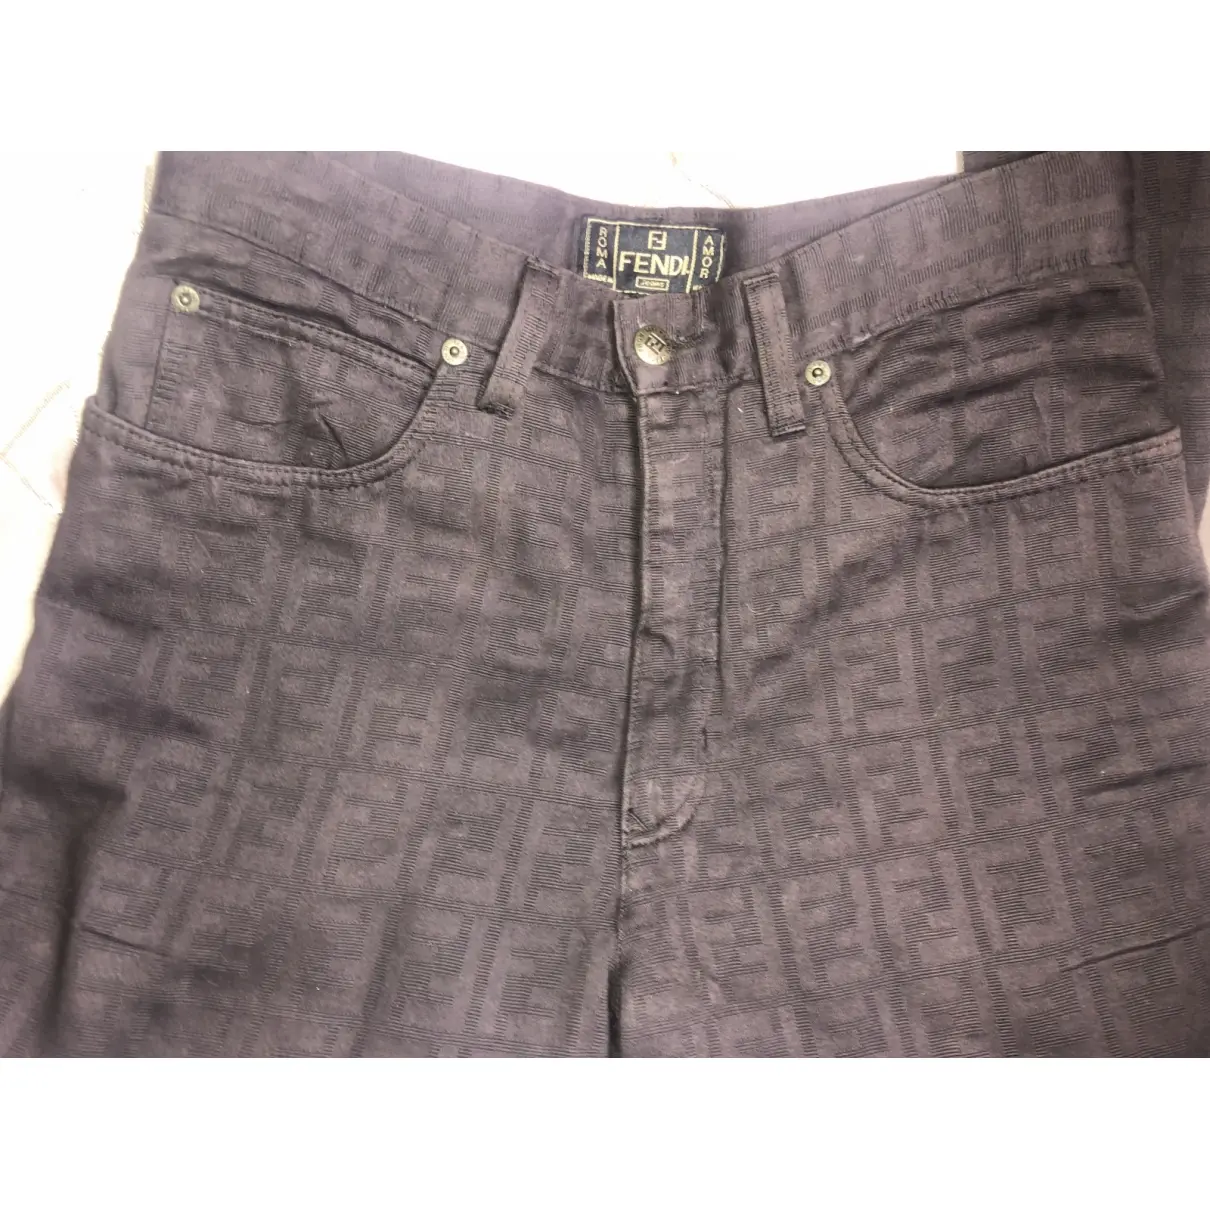 Fendi Straight pants for sale - Vintage